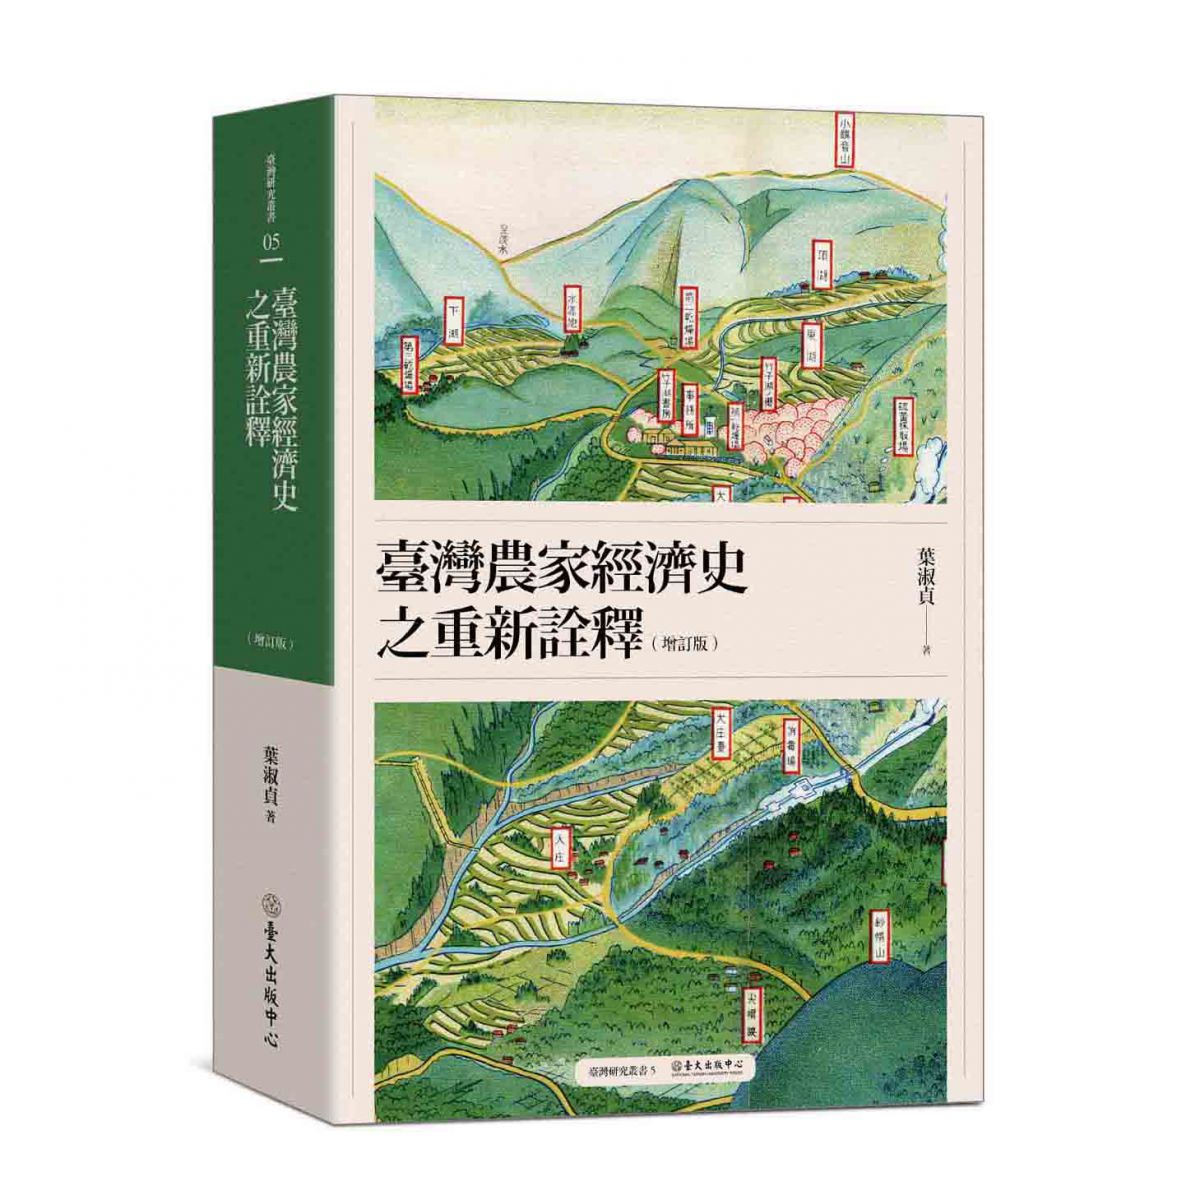 《臺灣農家經濟史之重新詮釋（增訂版）》重新詮釋臺灣農家經濟史上的重要課題